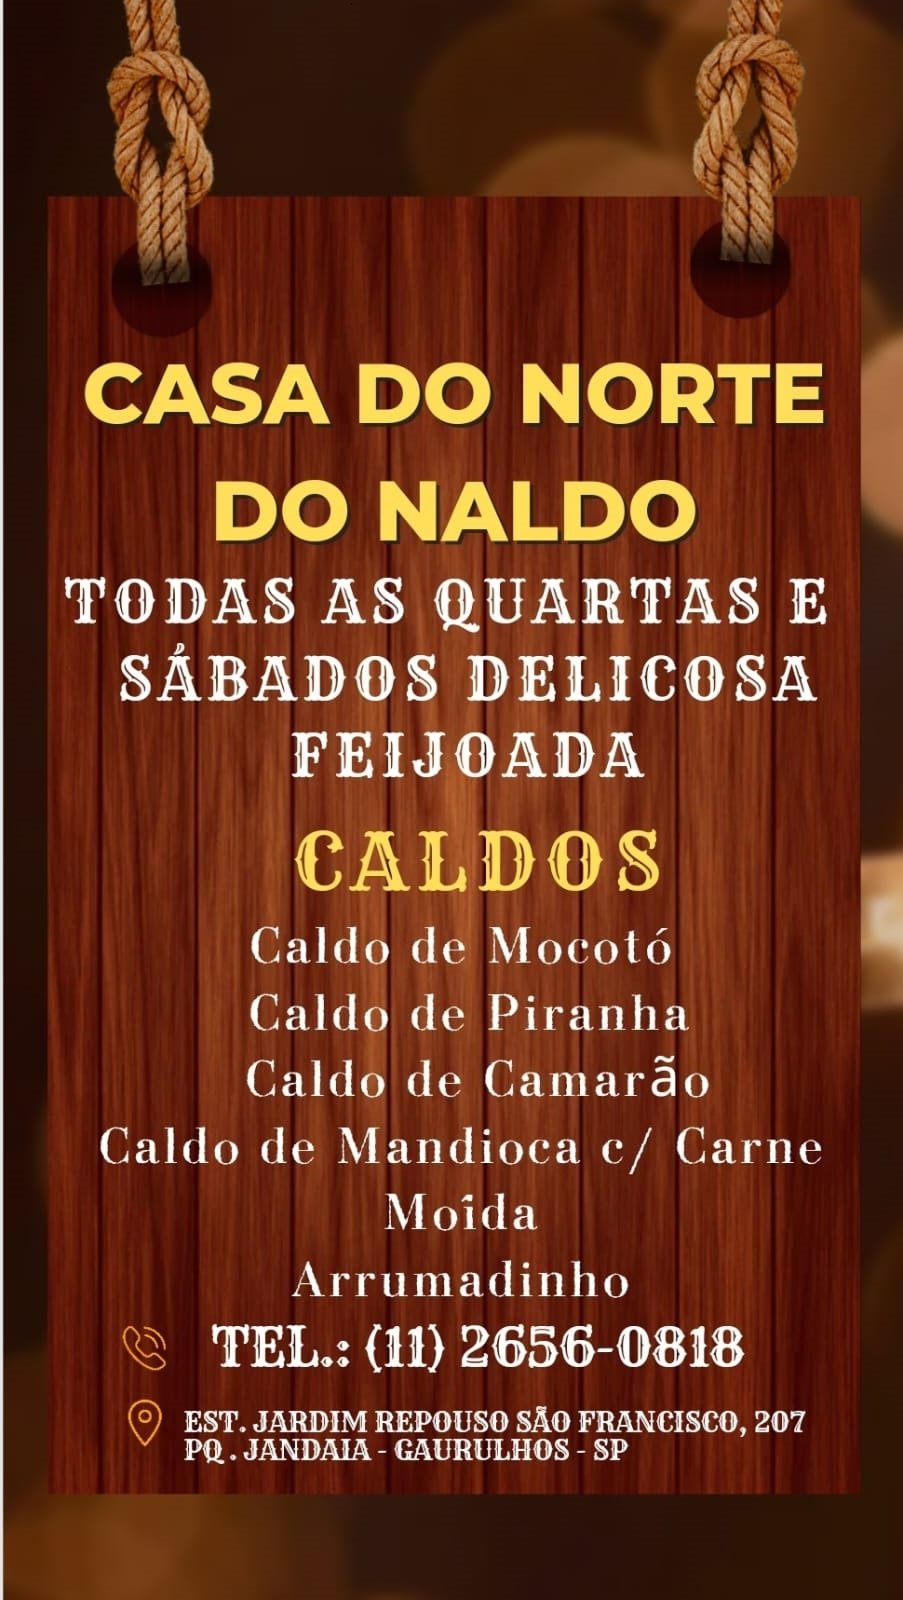 Casa do Norte Naldo em Guarulhos